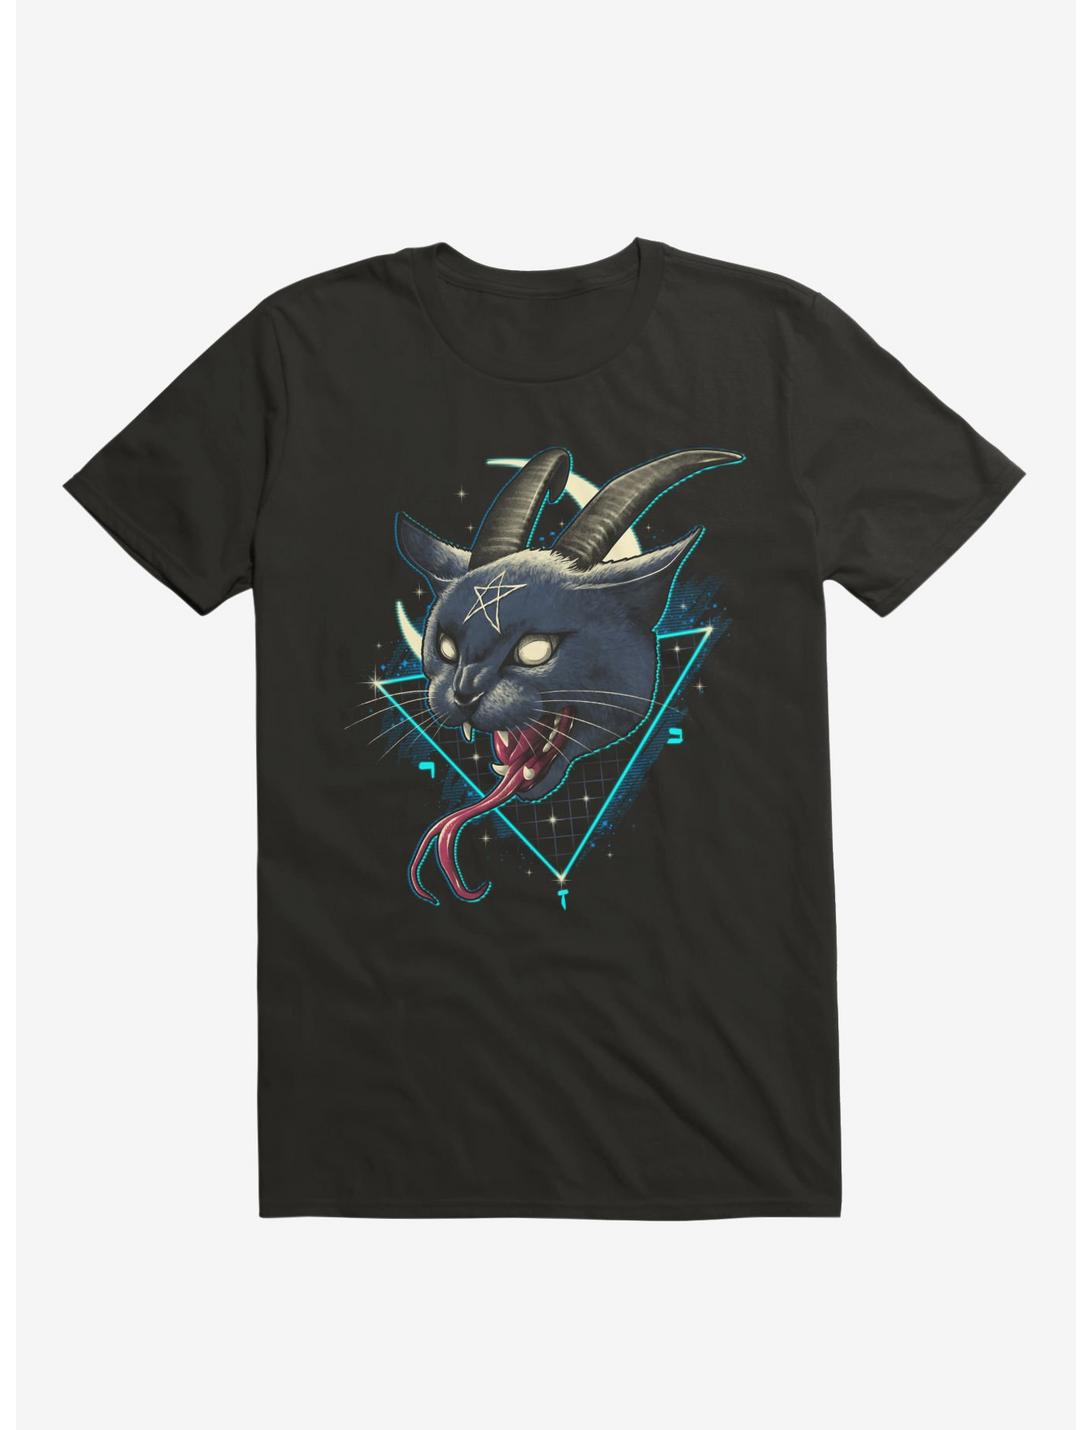 Rad Devil Cat Black T-Shirt, BLACK, hi-res